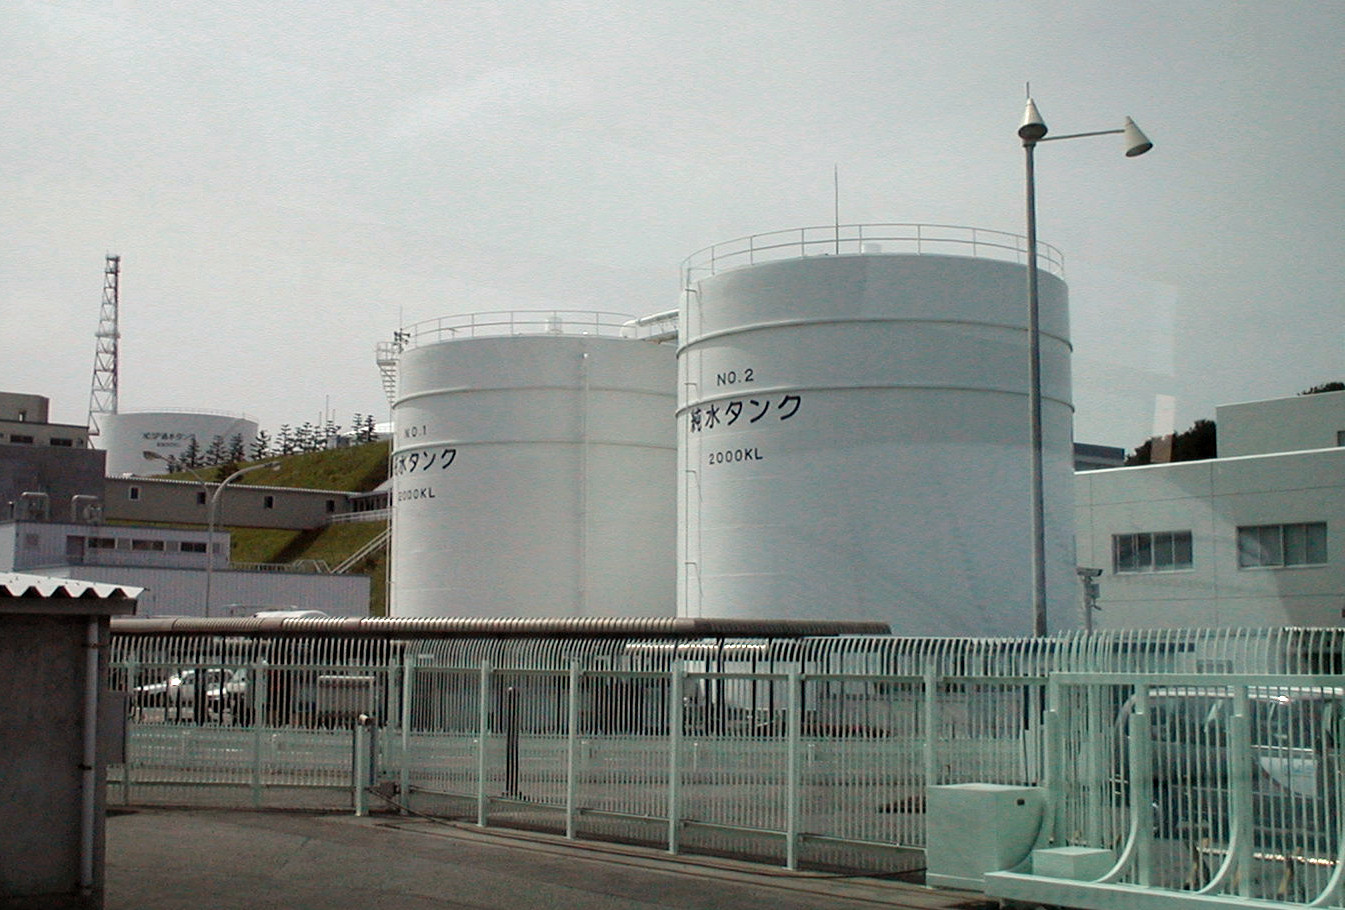 La centrale nucléaire de Fukushima, au Japon, a été le lieu d'un important accident en mars 2011. Photo Wikimedia Commons